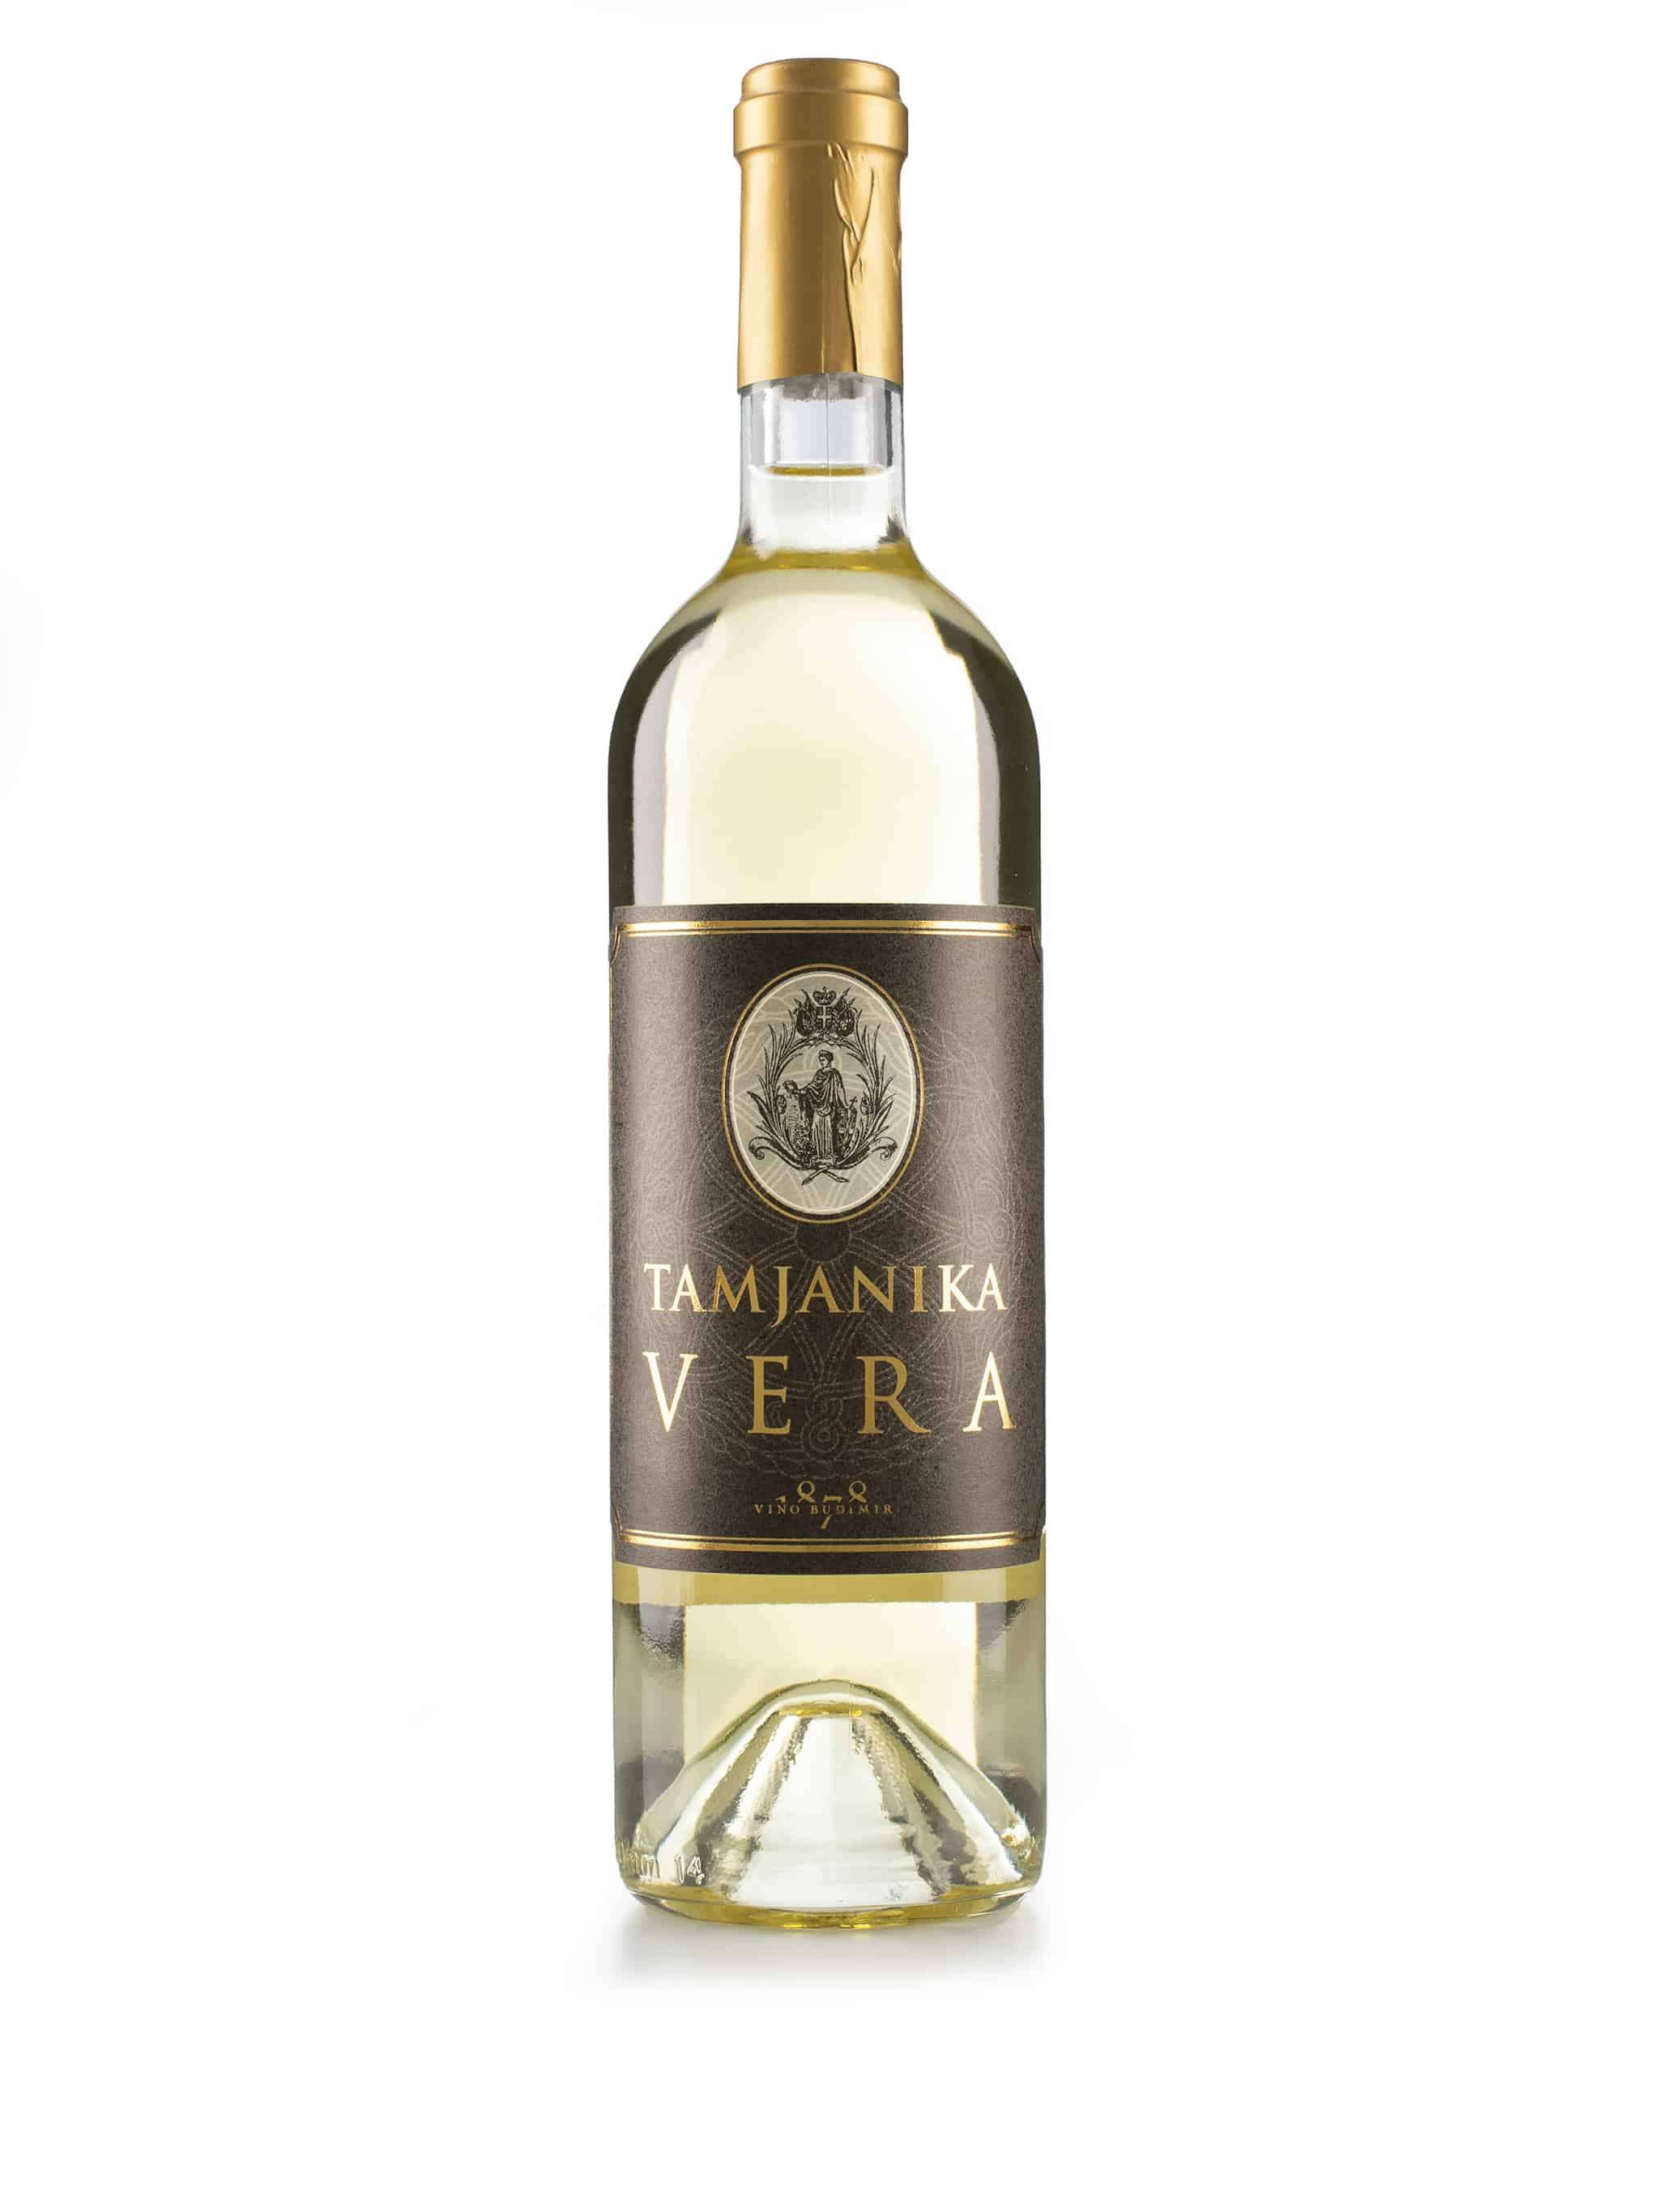 Servische witte wijn van wijnstreek Budimir: Tamjanika Vera